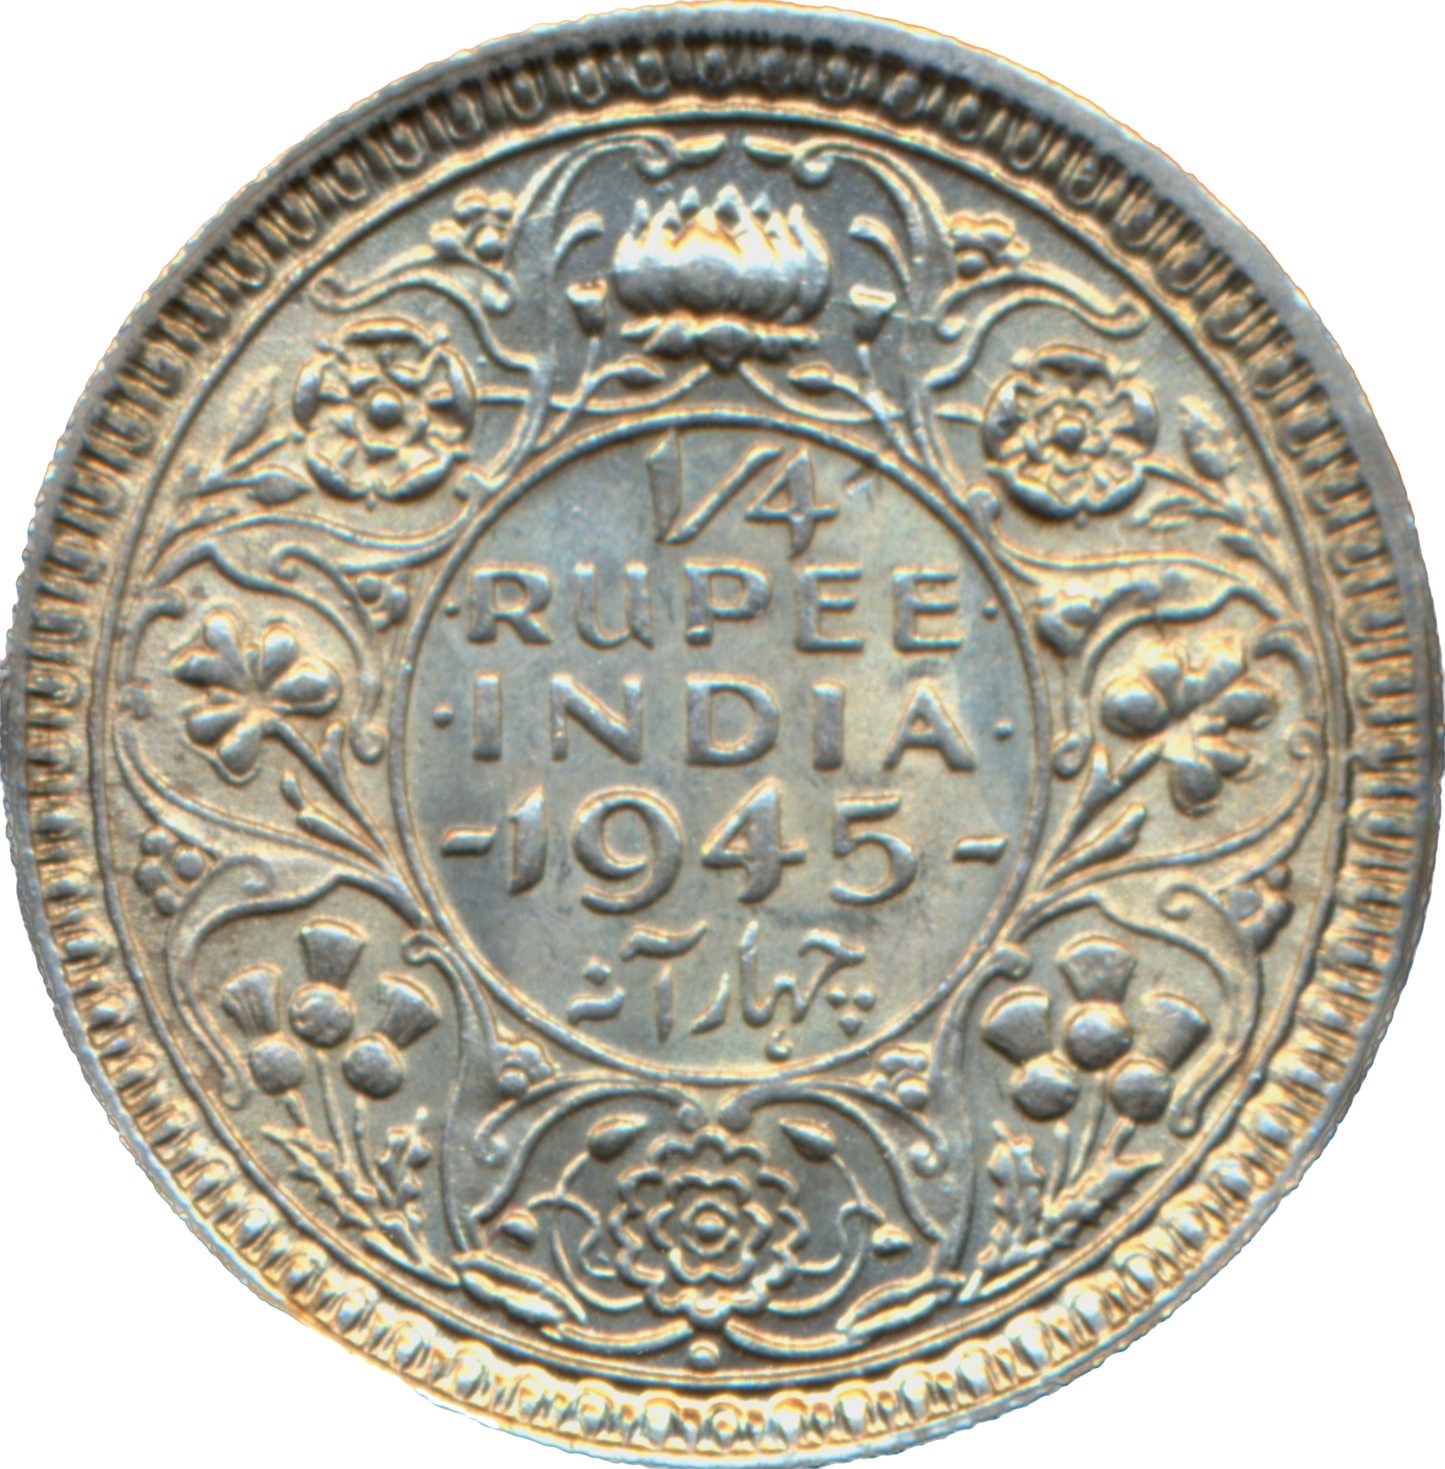 India KM547 1945 Silver 1/4 Rupee UNC